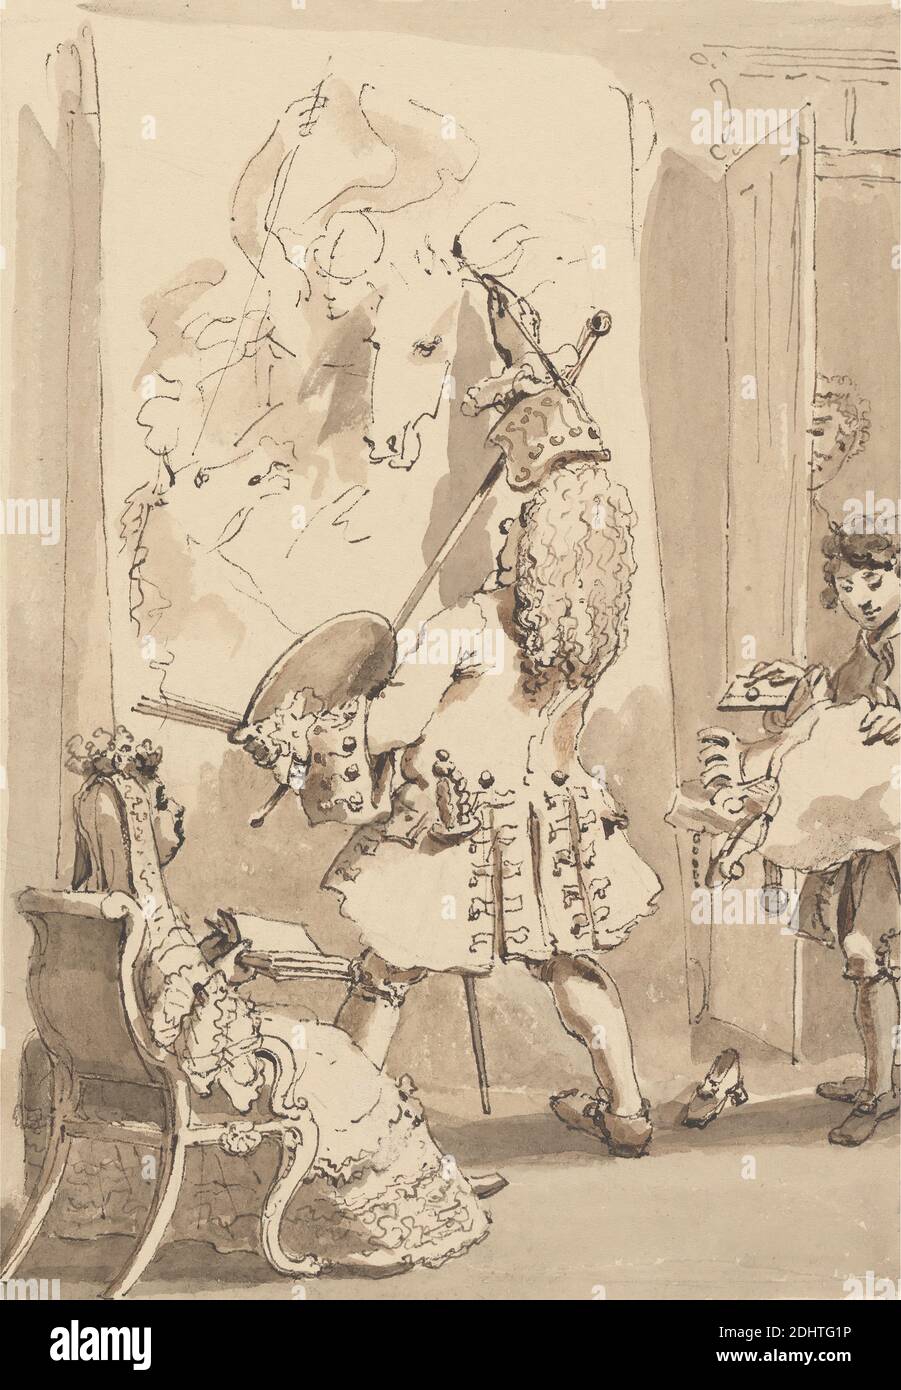 Sir James Thornhill's Boy entra nella sua Master's Painting Room per consegnare il Bundle e una lettera alla presenza di Lady Thornhill, John Thomas Smith, 1766–1833, British, 1817, inchiostro penna e marrone, inchiostro nero, lavaggio marrone, lavaggio grigio e grafite su carta di spessore moderato, testurizzata, beige, wove, foglio: 12 15/16 × 9 5/8 pollici (32.9 × 24.4 cm) e immagine: 7 1/2 × 5 5/16 pollici (19.1 × 13.5 cm), ragazzo, tela, costume, illustrazione, soggetto di genere, moglie Foto Stock